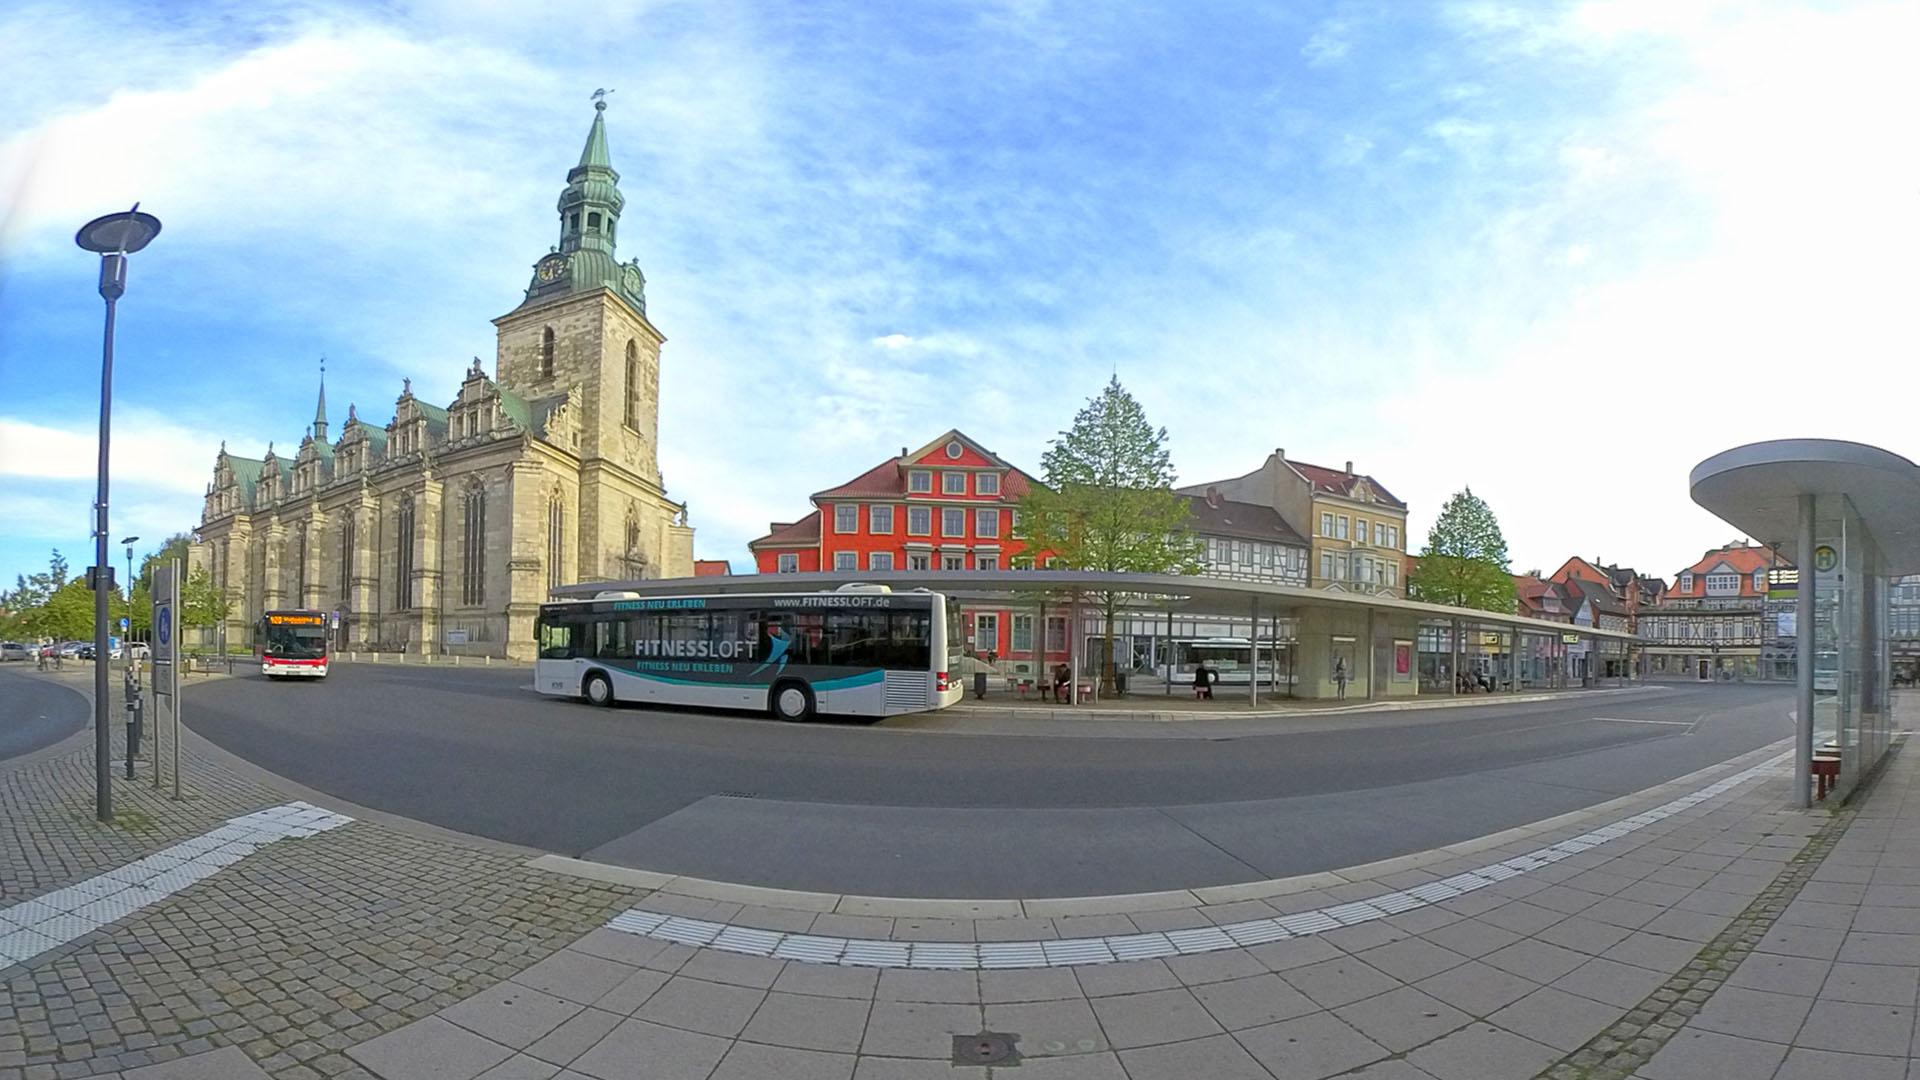 Weitwinkelaufnahme vom Kornmarkt: im Hintergrund die Hauptkirche und Häuserzeile, im Vordergrund die Bushaltestelle und zwei Busse.